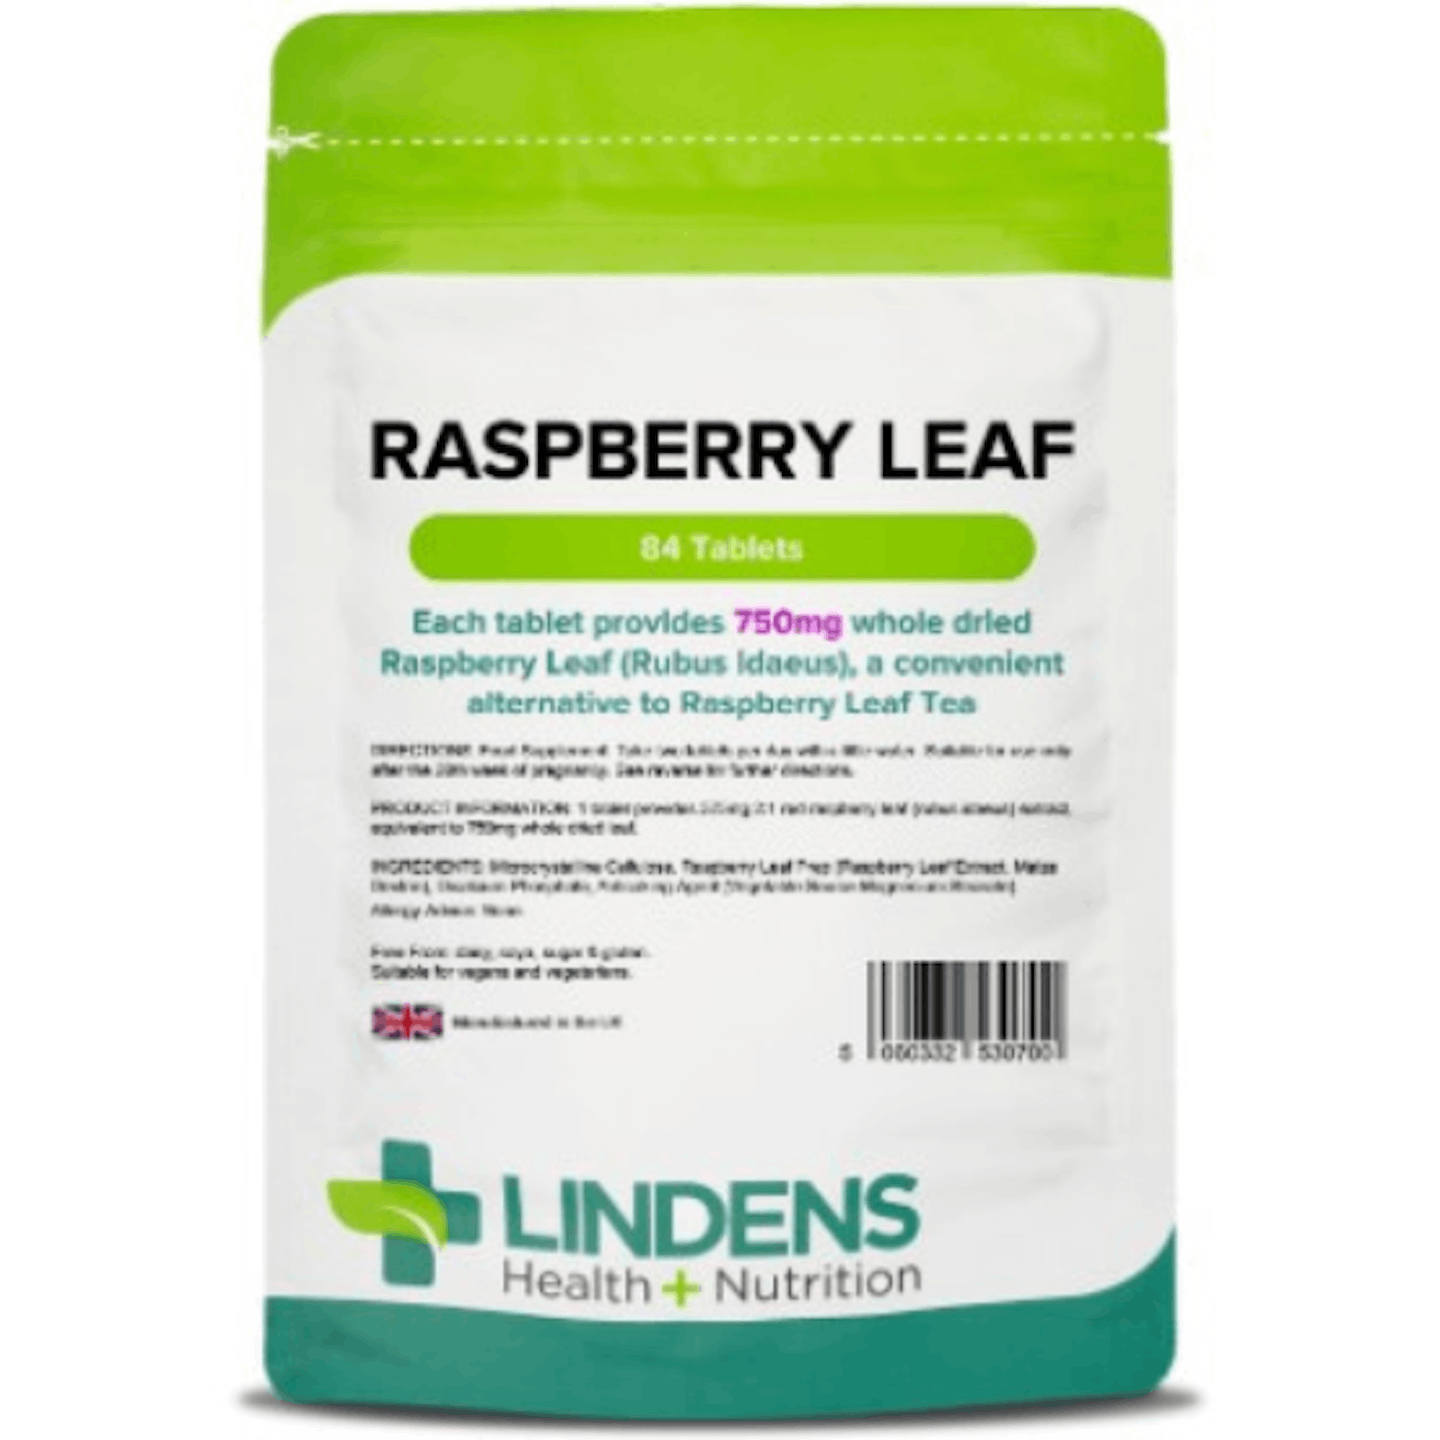 Raspberry leaf tea tablets